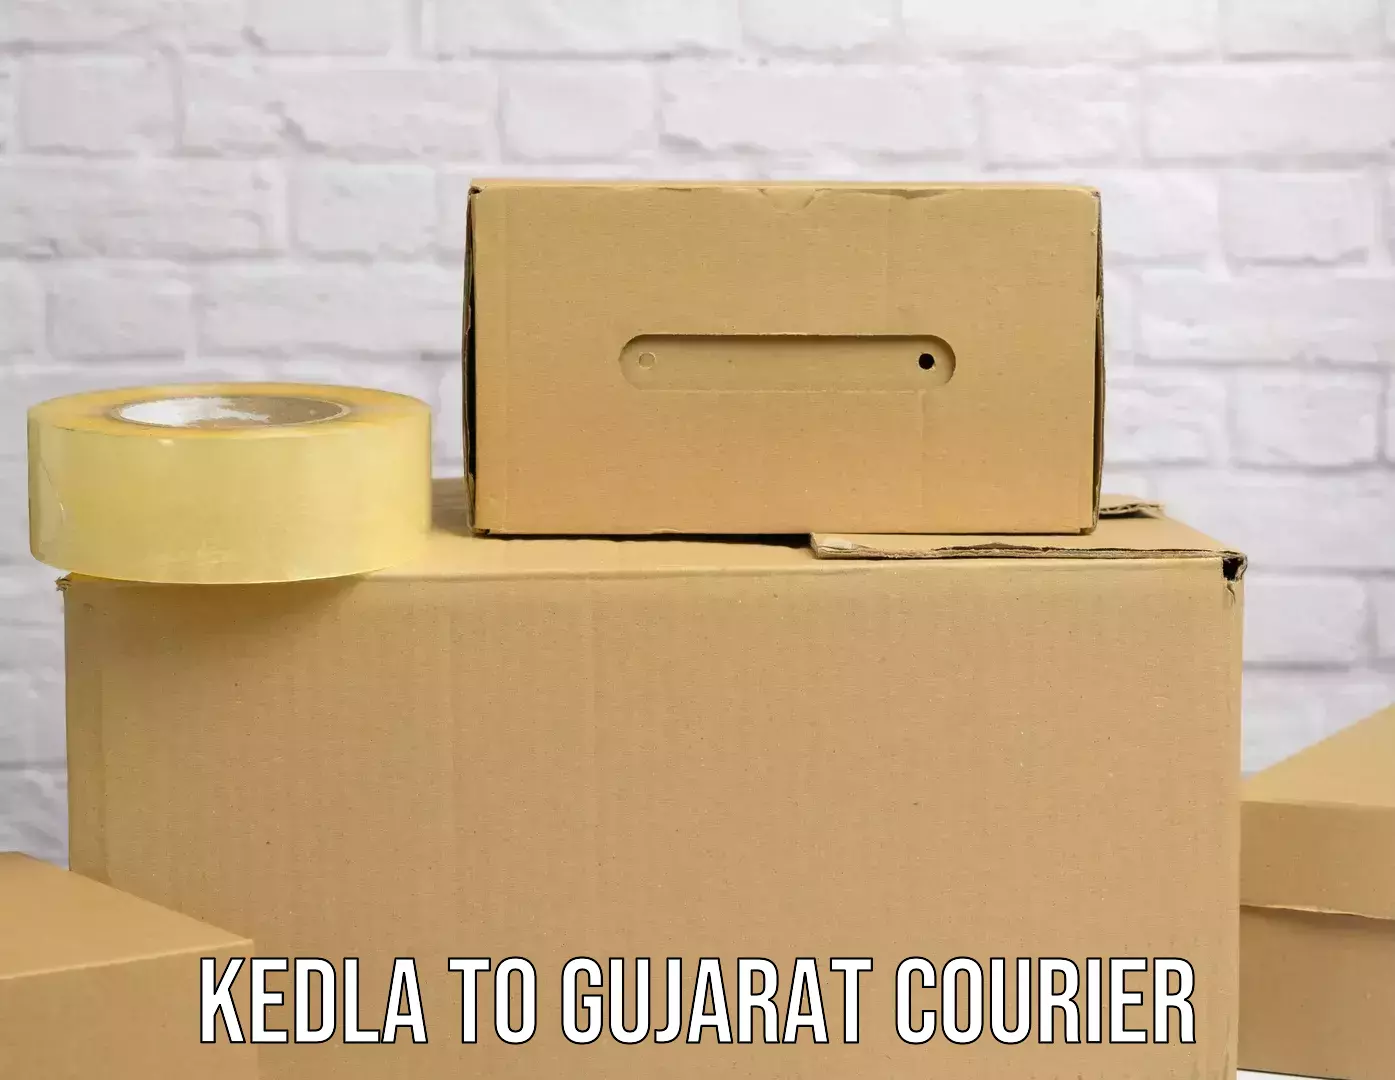 Online shipping calculator in Kedla to Vatadara